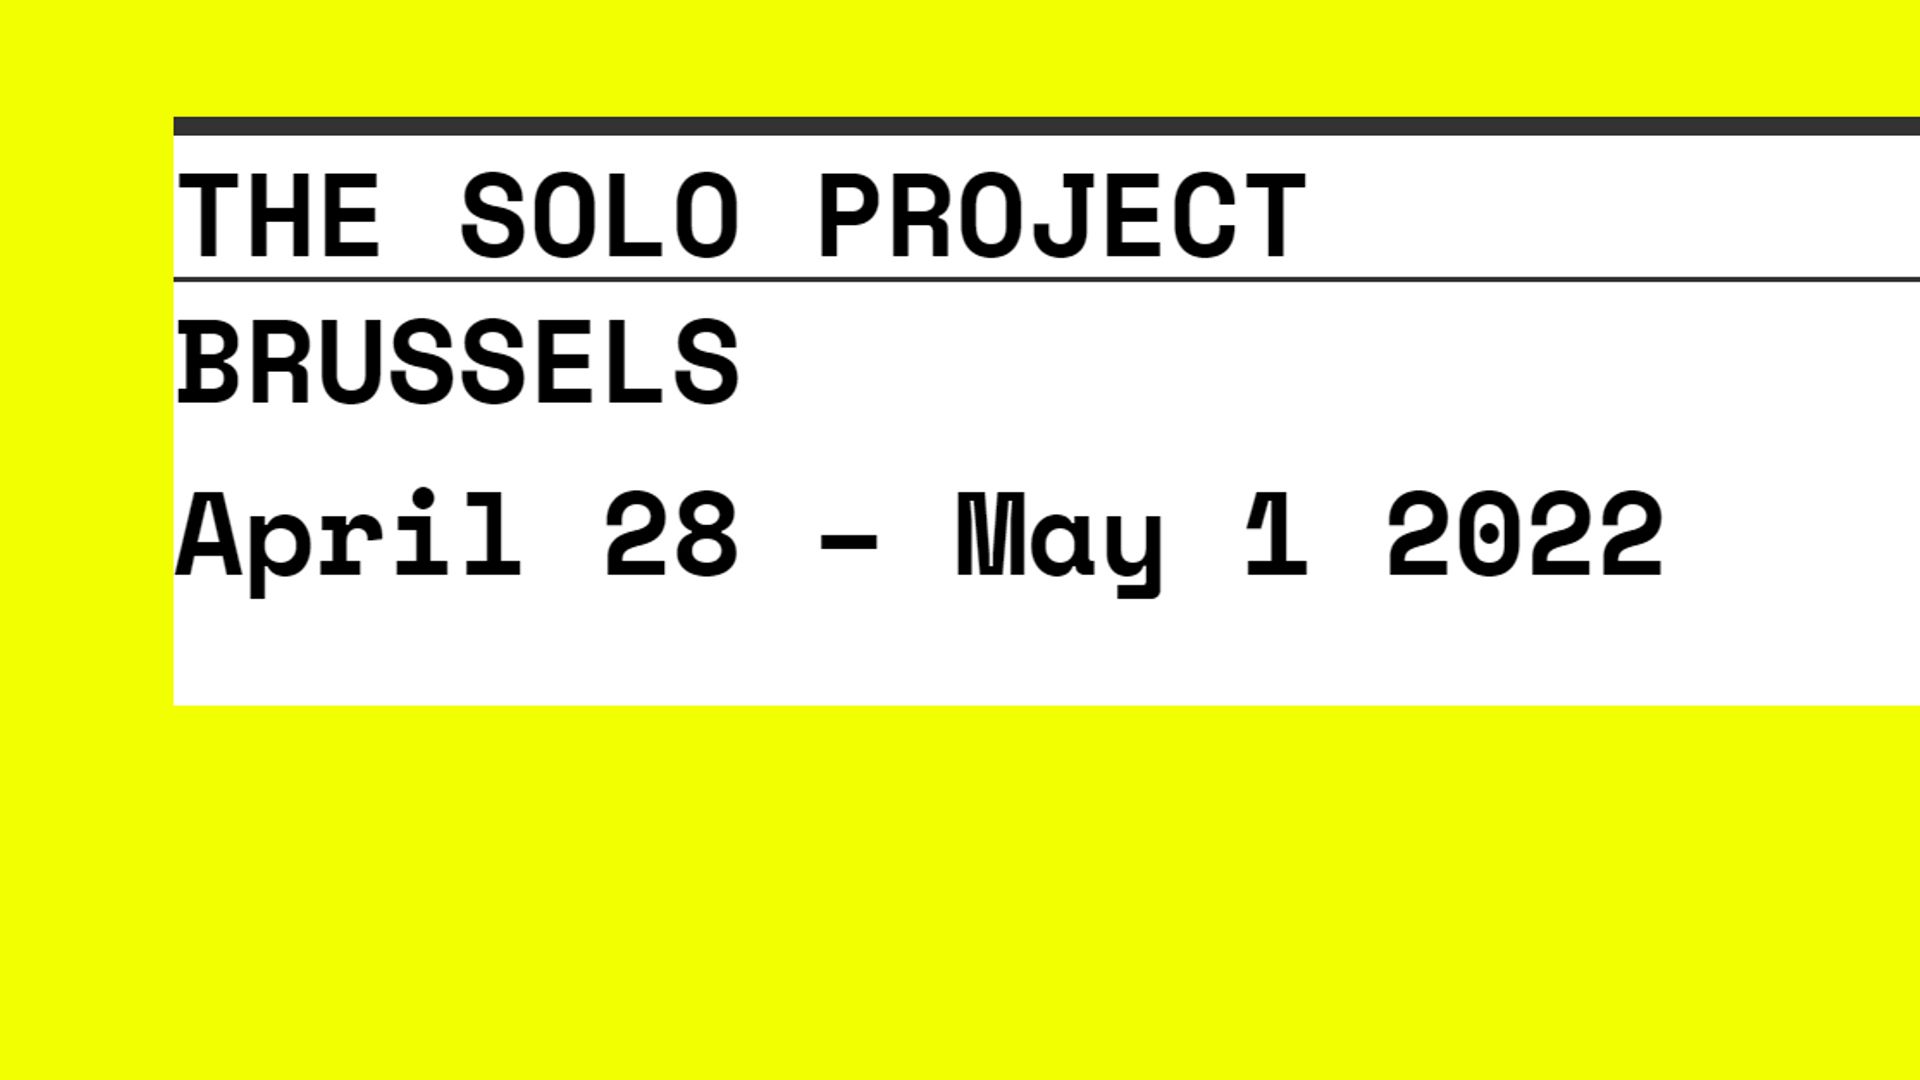 La première édition belge de The Solo Project, une foire d’art contemporain développée en Suisse, se tiendra du 28 avril au 1er mai à Bruxelles au Circularium.